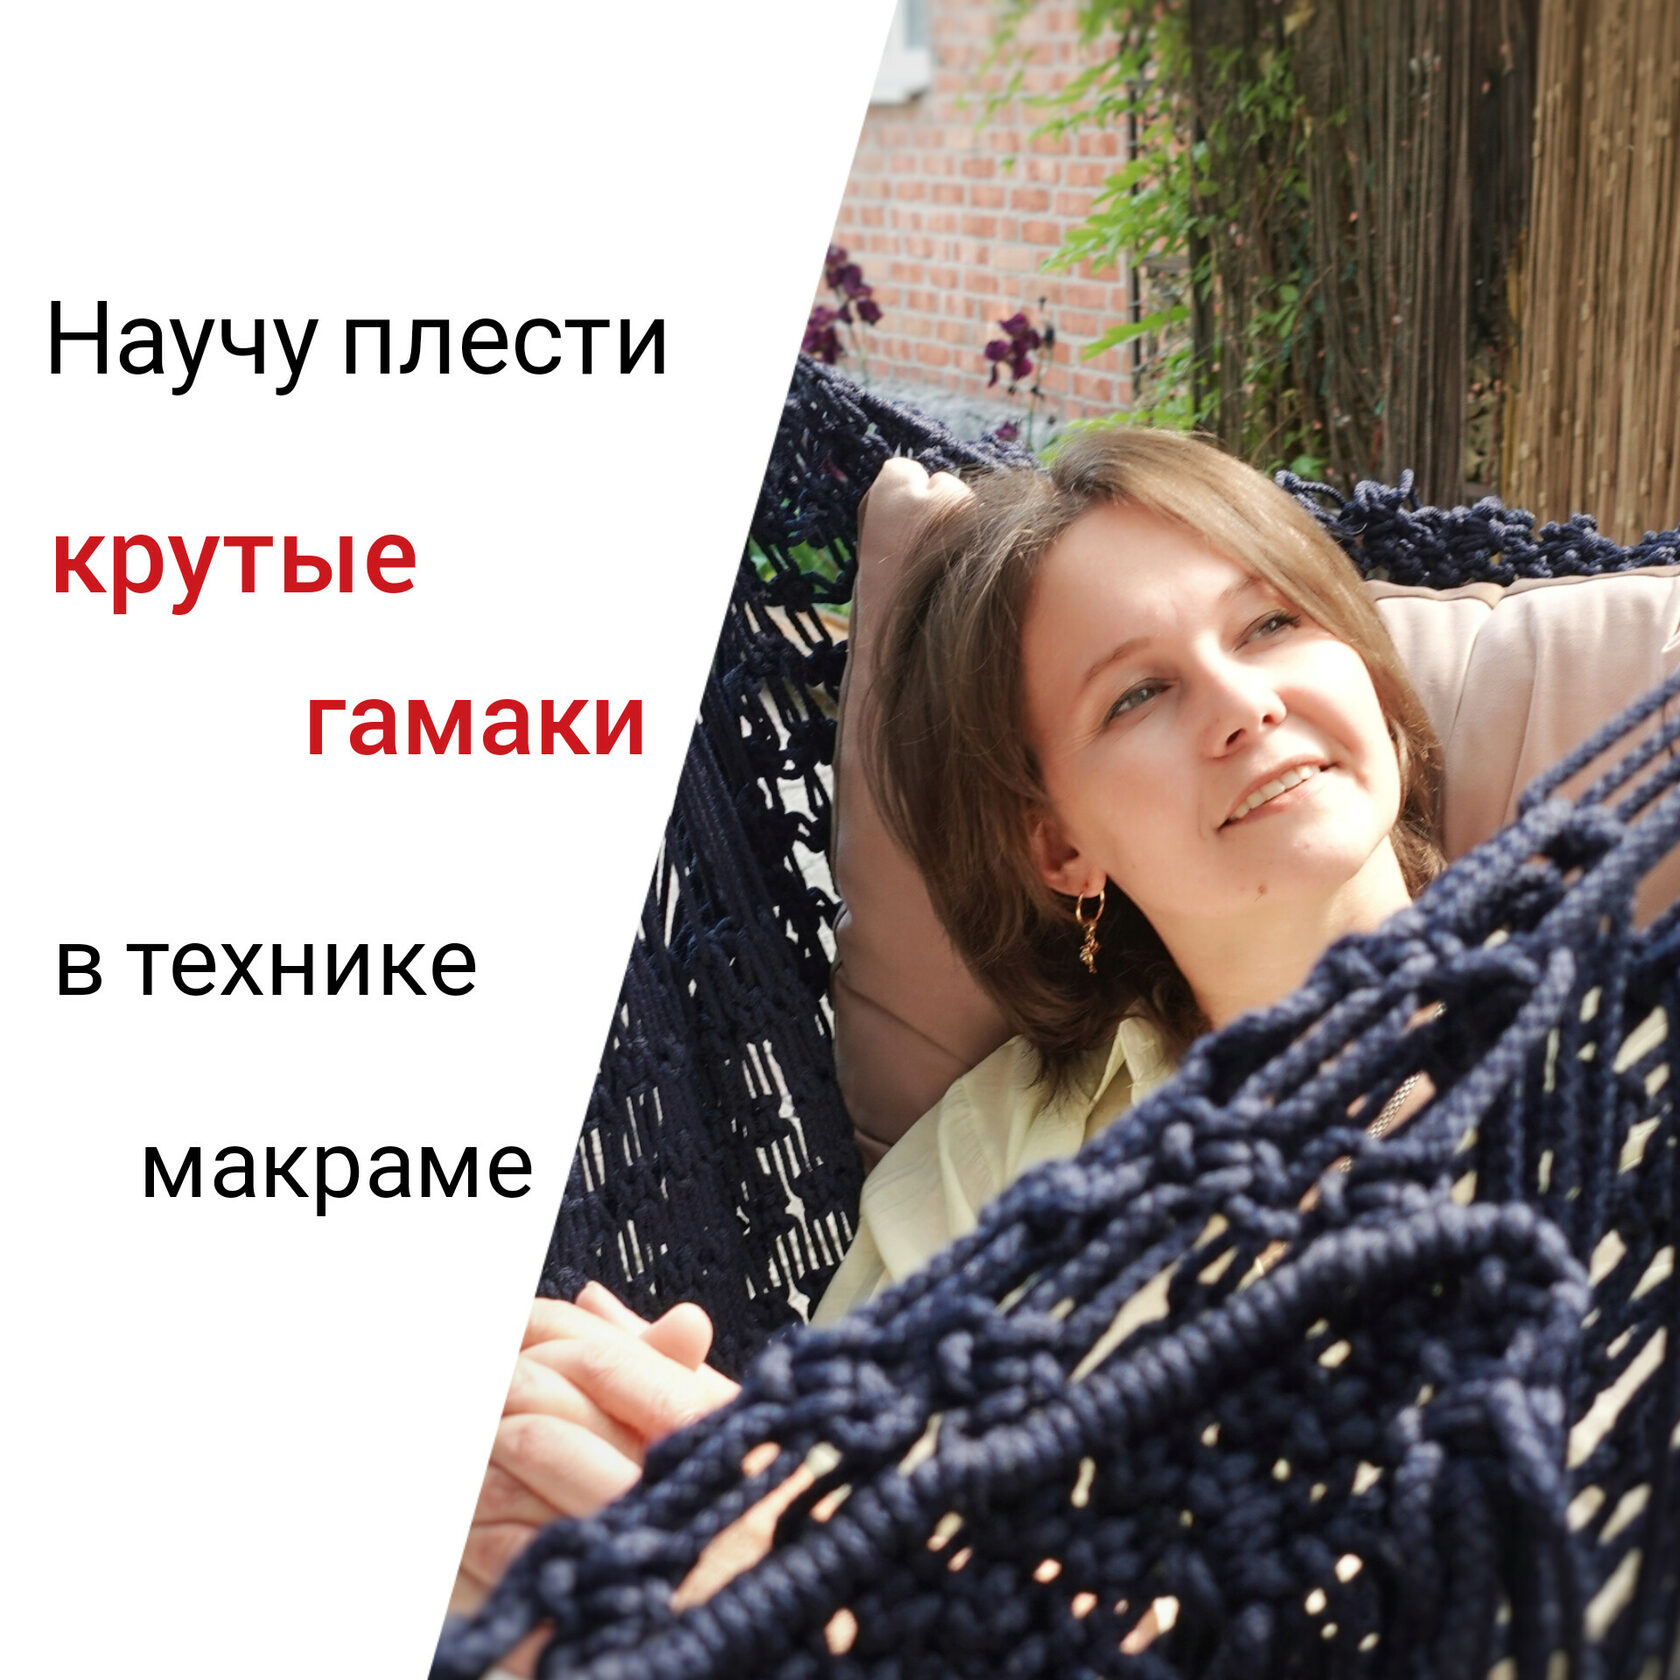 Екатерина и Юрий Шумаковы — оригамисты